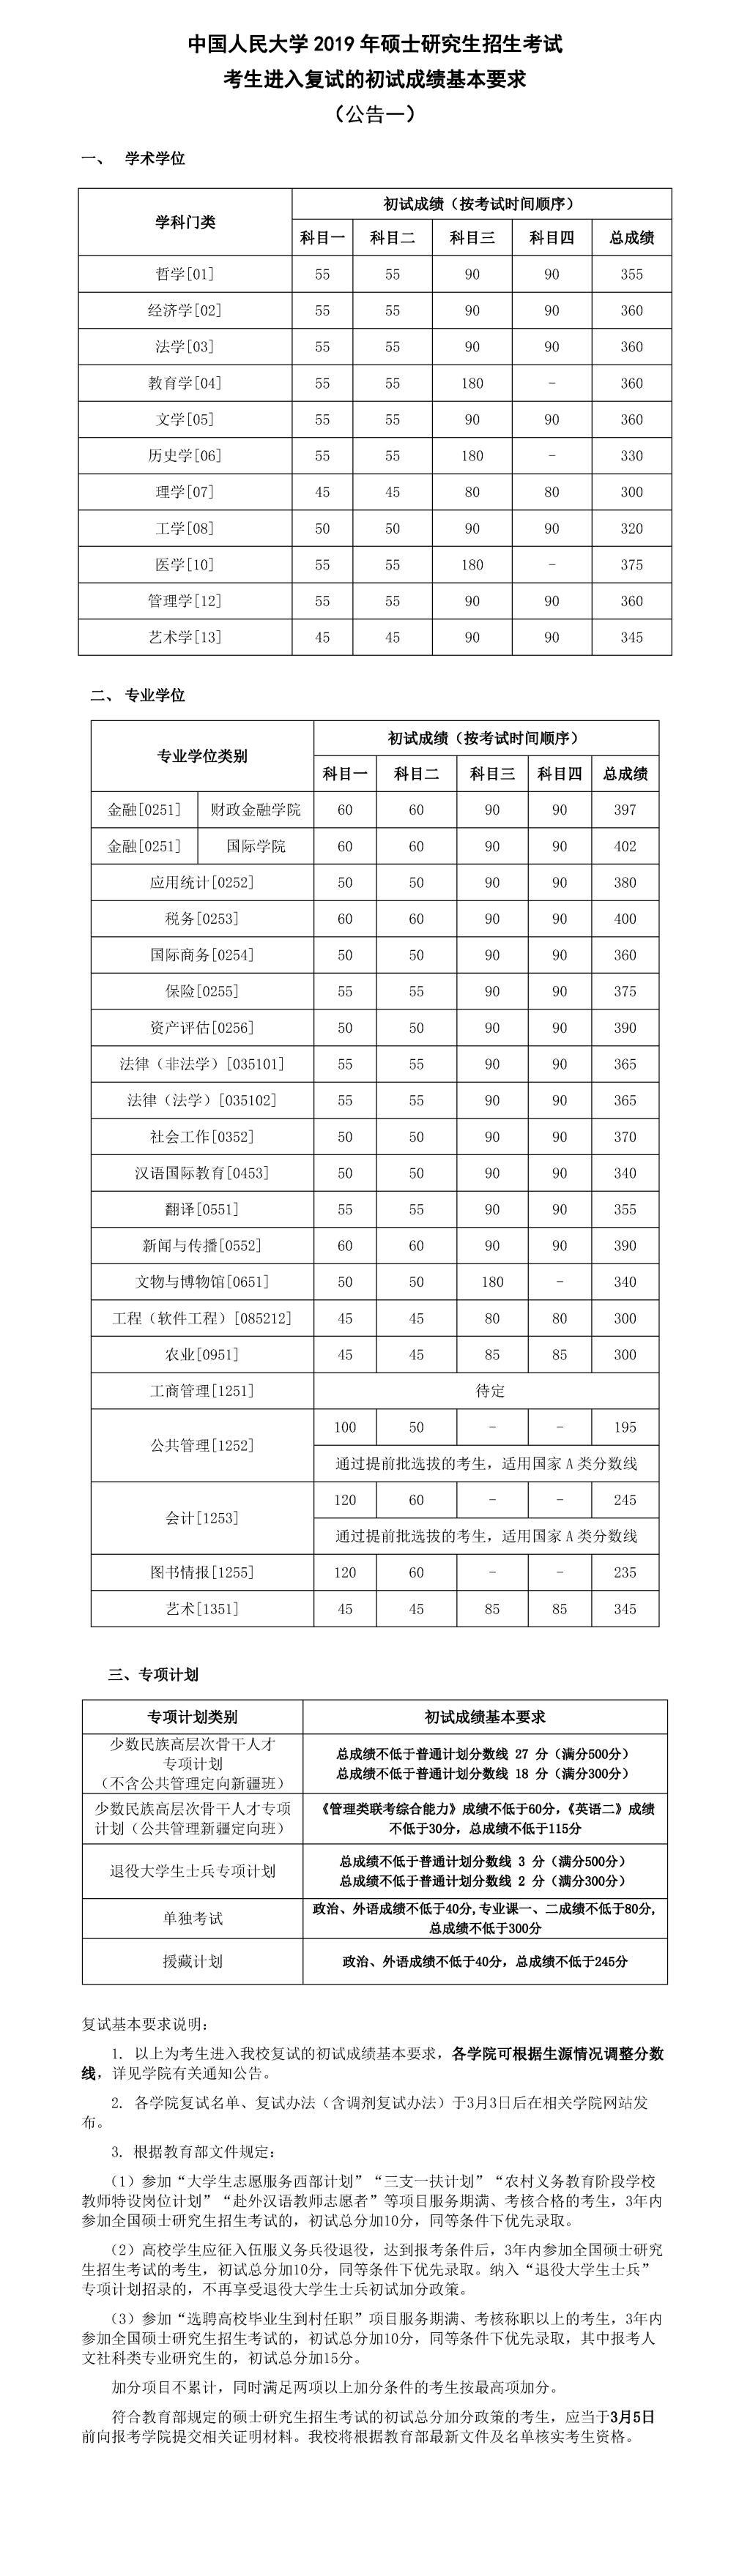 2019考研中国人民大学复试分数线已公布1